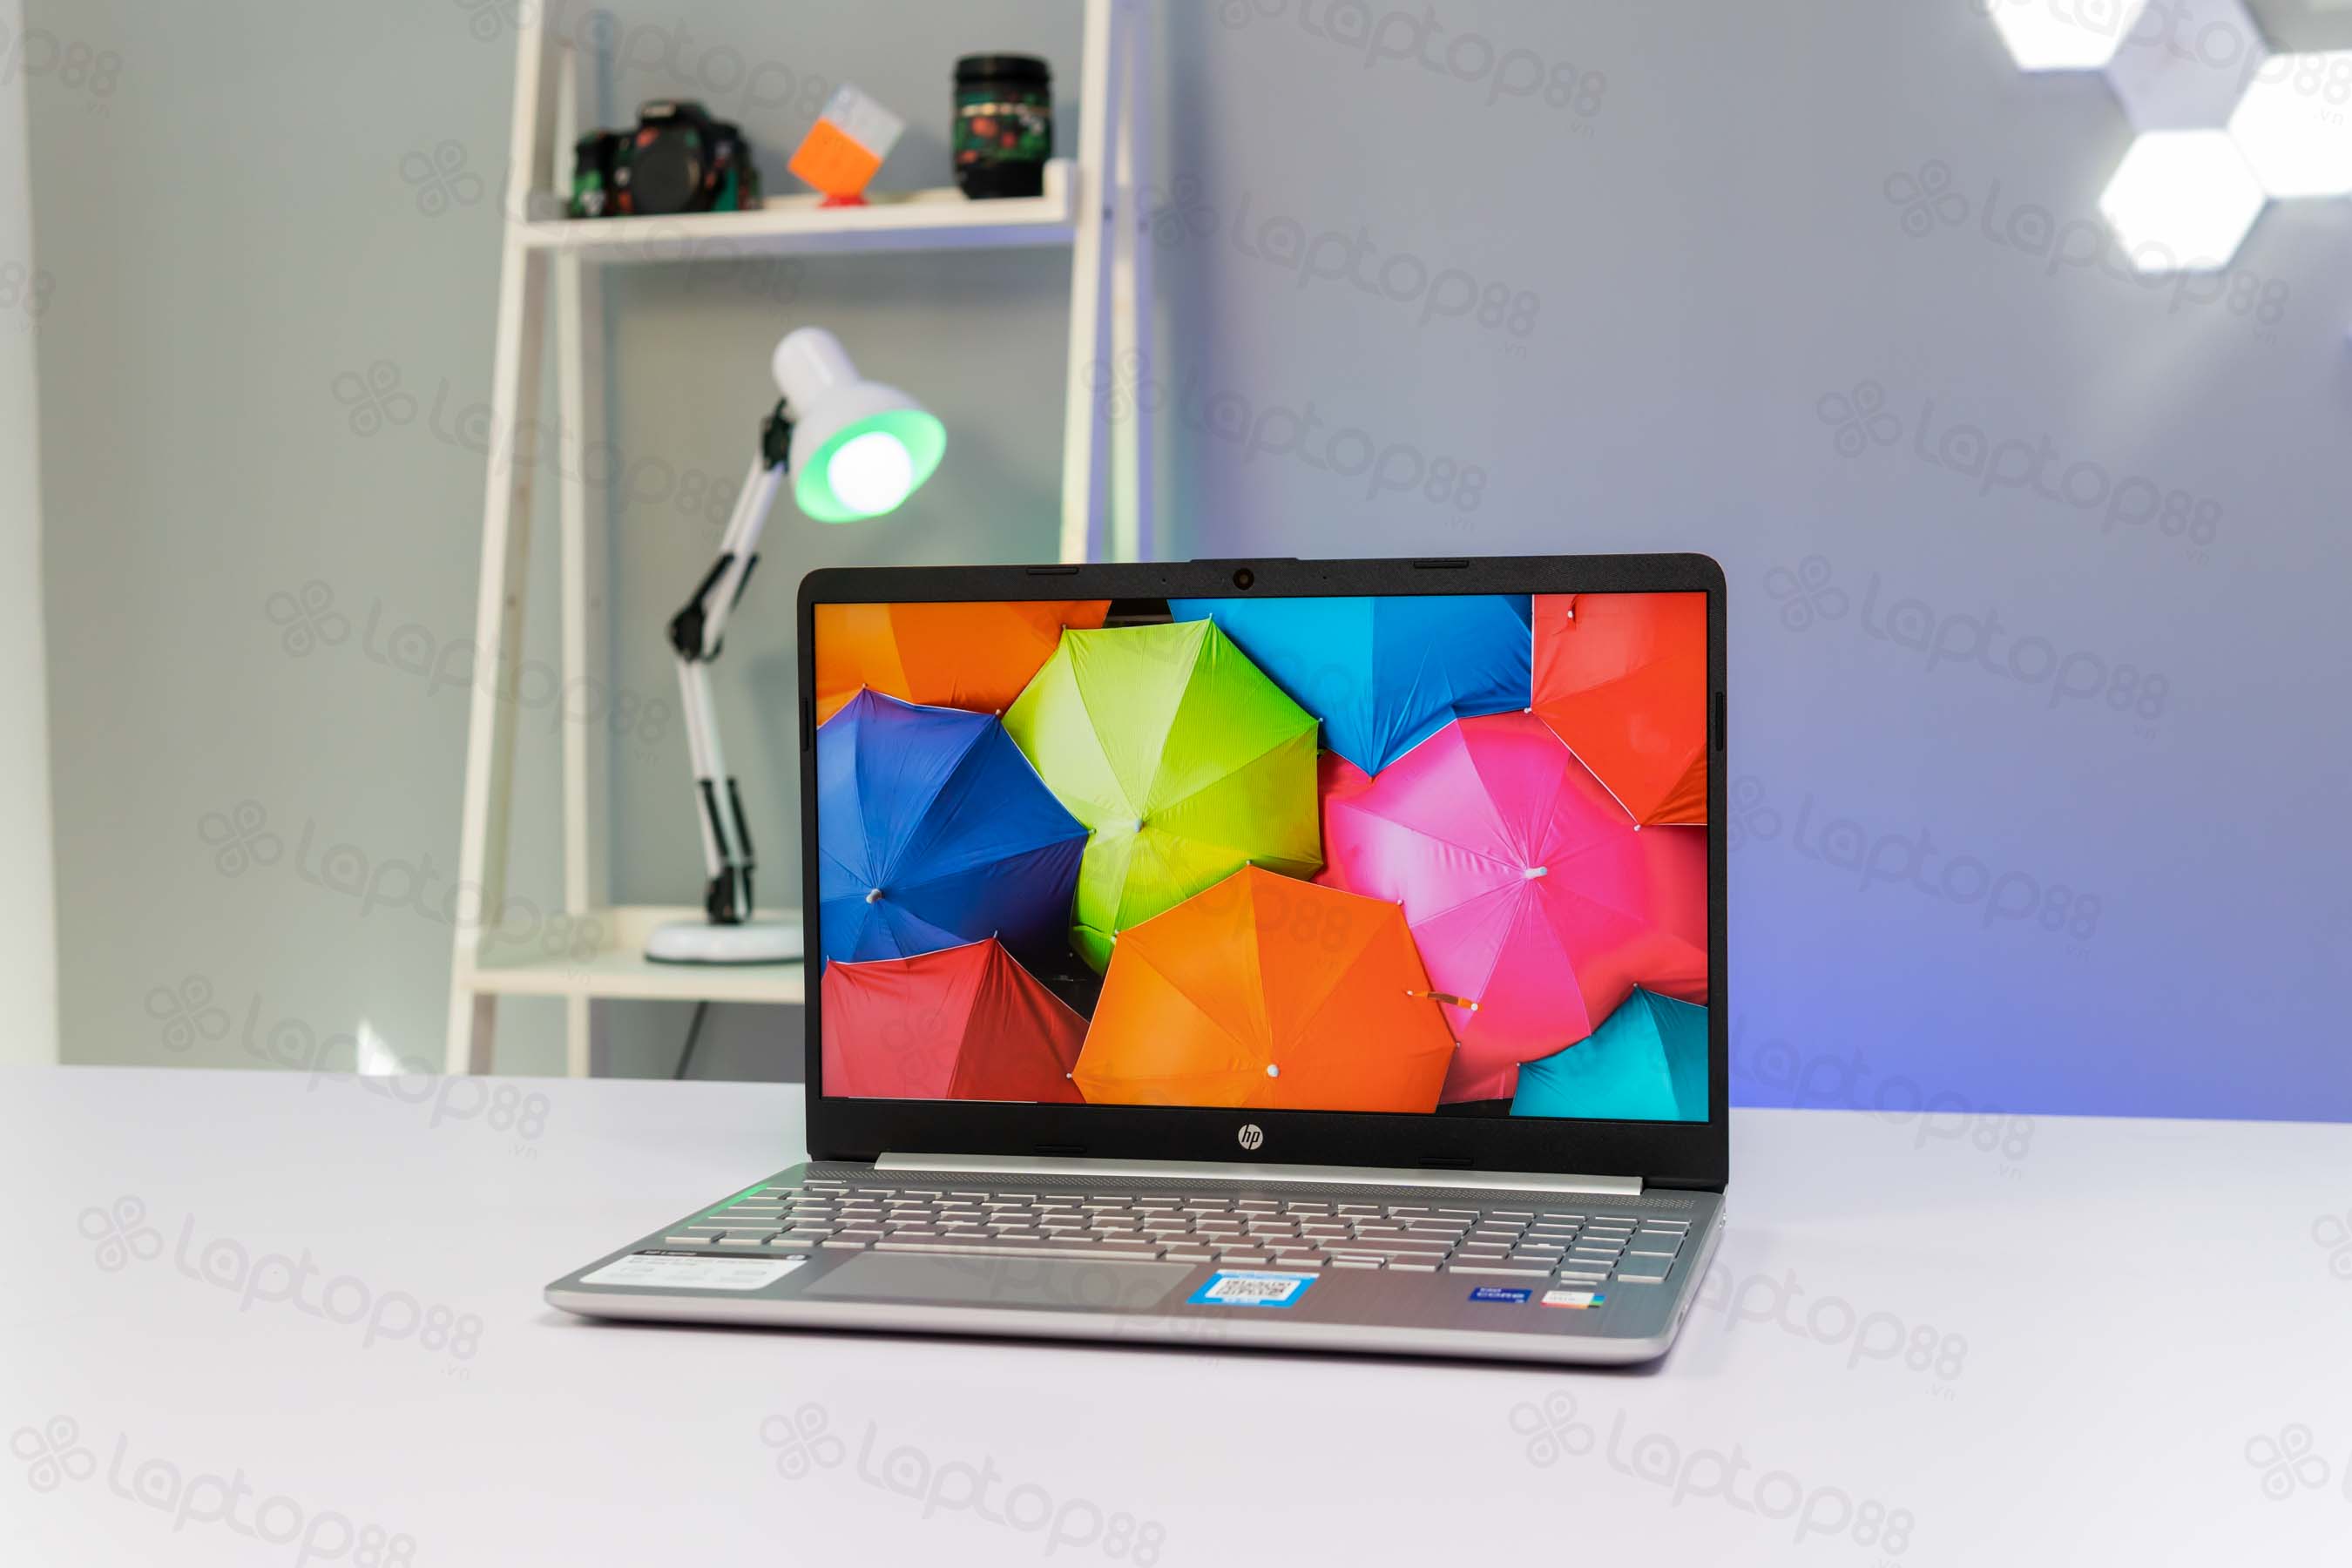 Giá Laptop HP Pavilion 15 có đắt như bạn nghĩ?